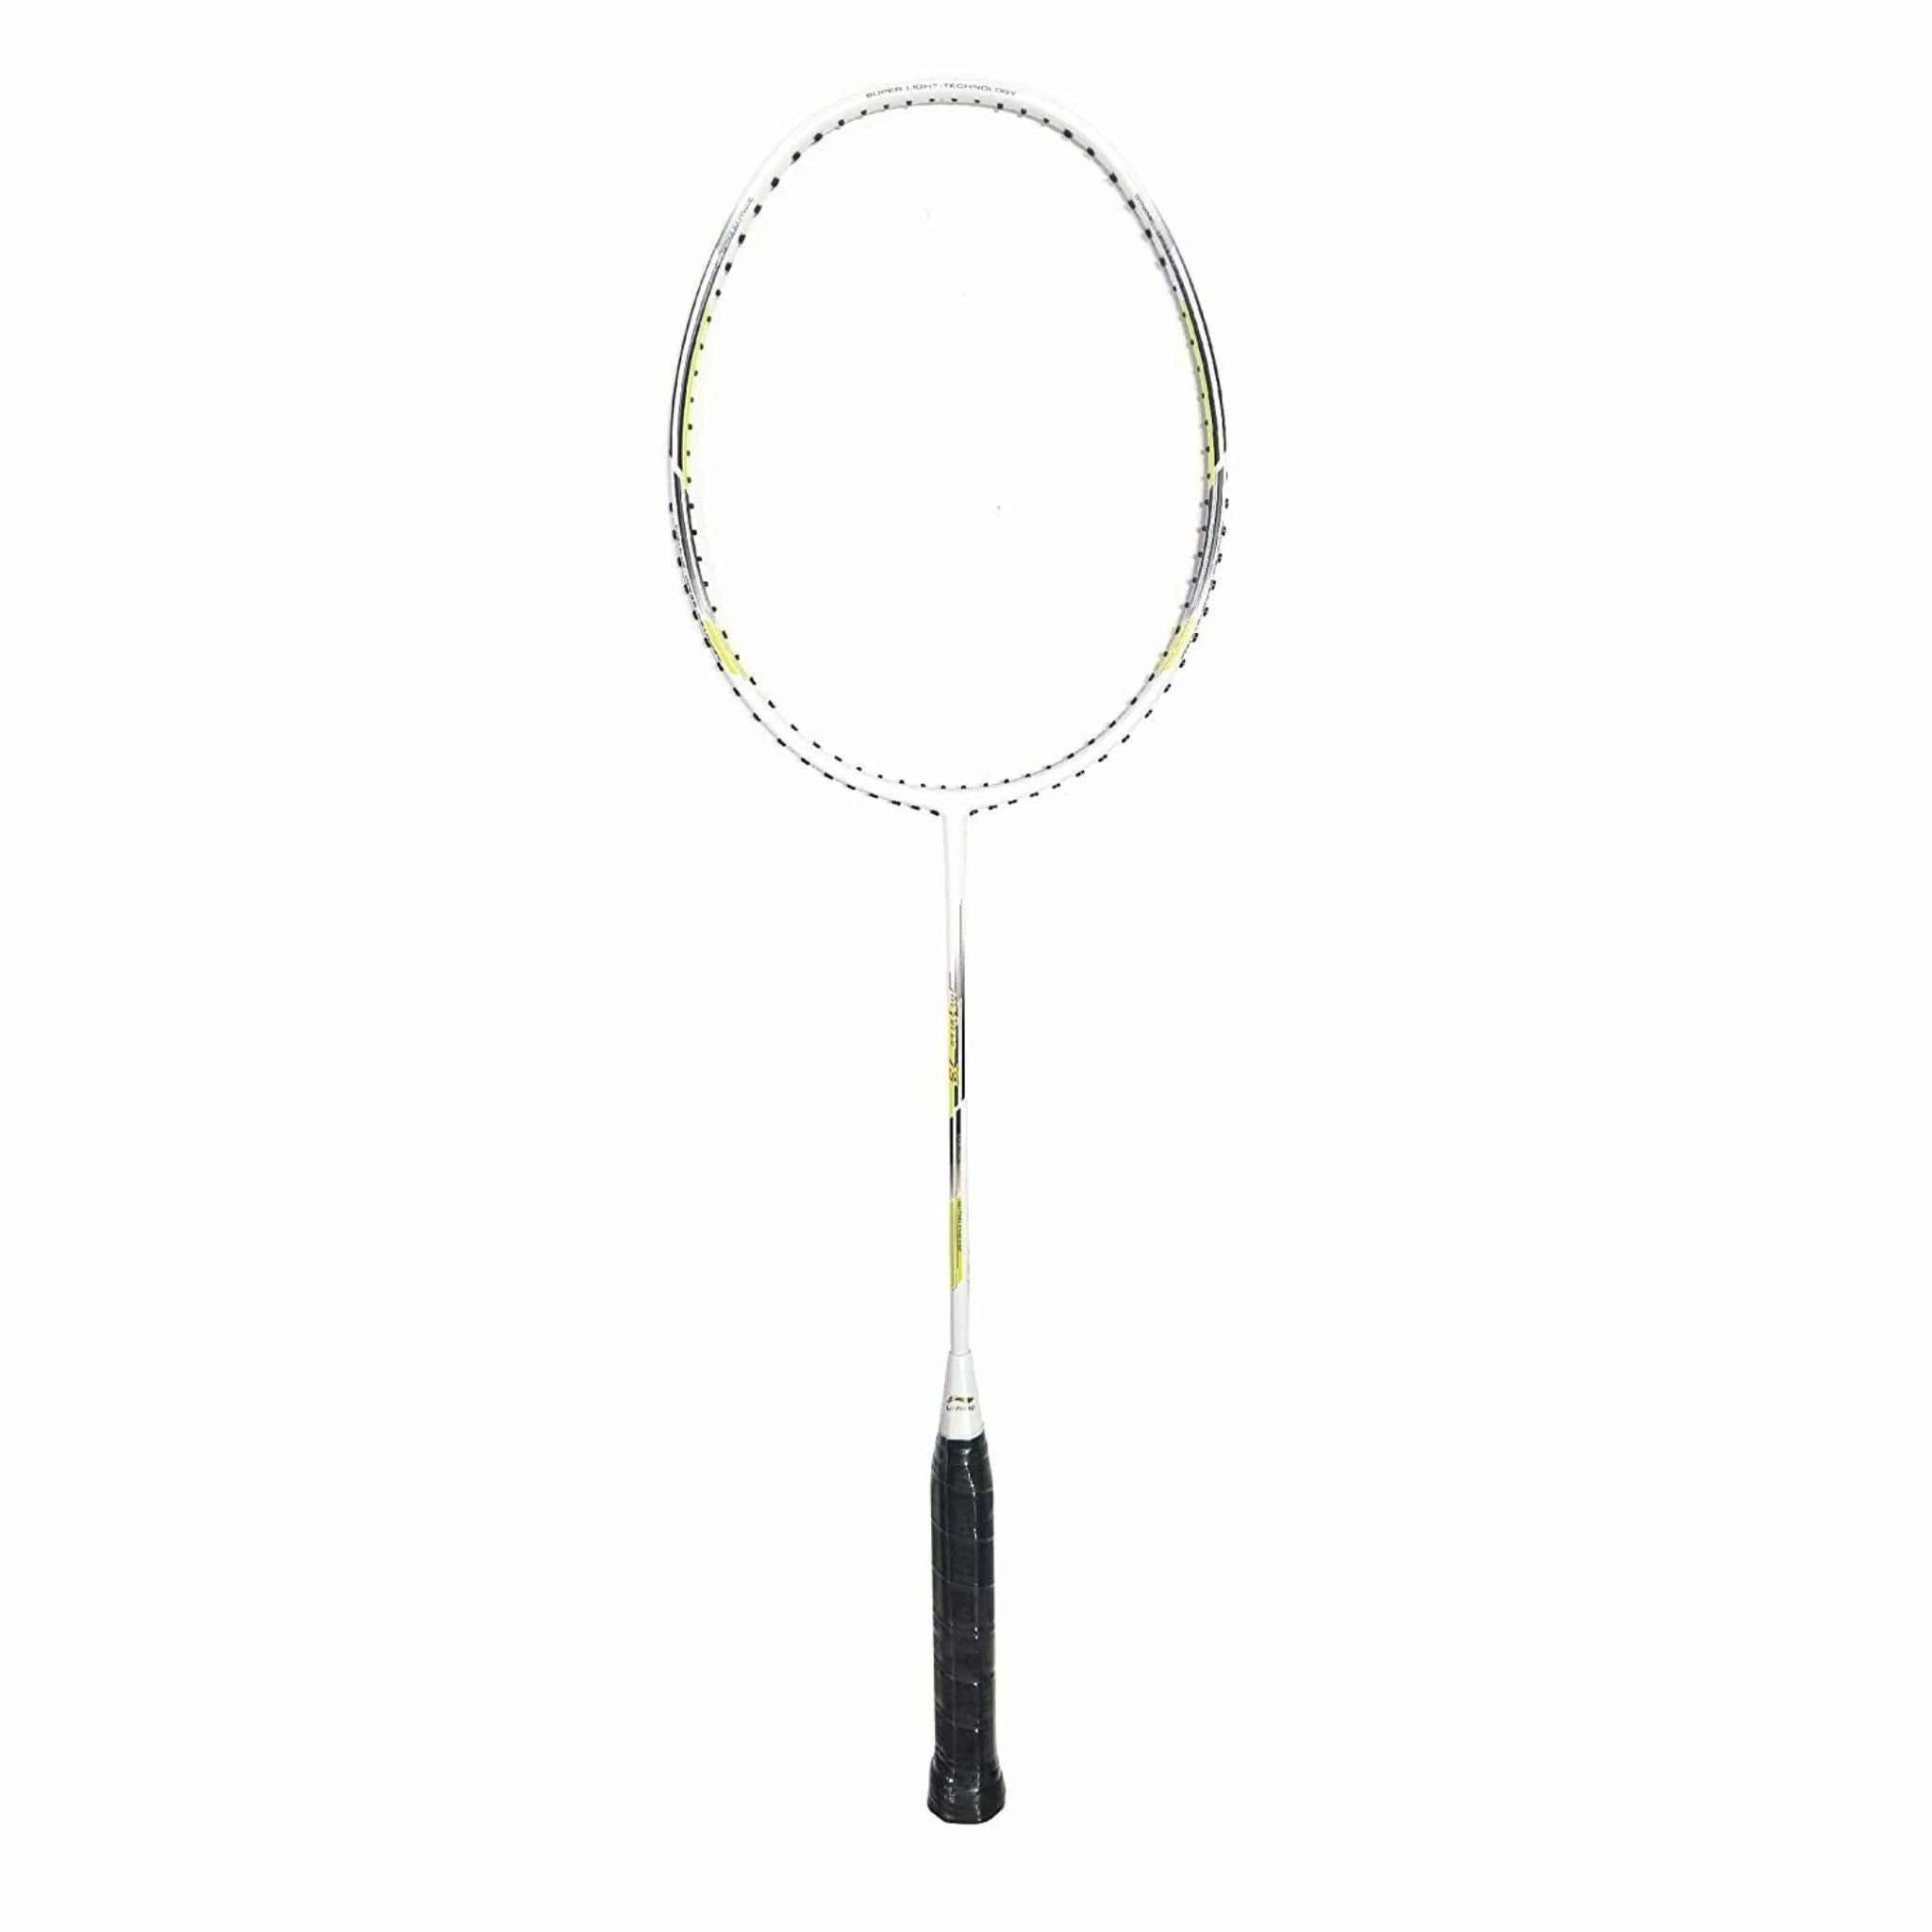 LI-NING Air-Force 79 White Badminton Racket